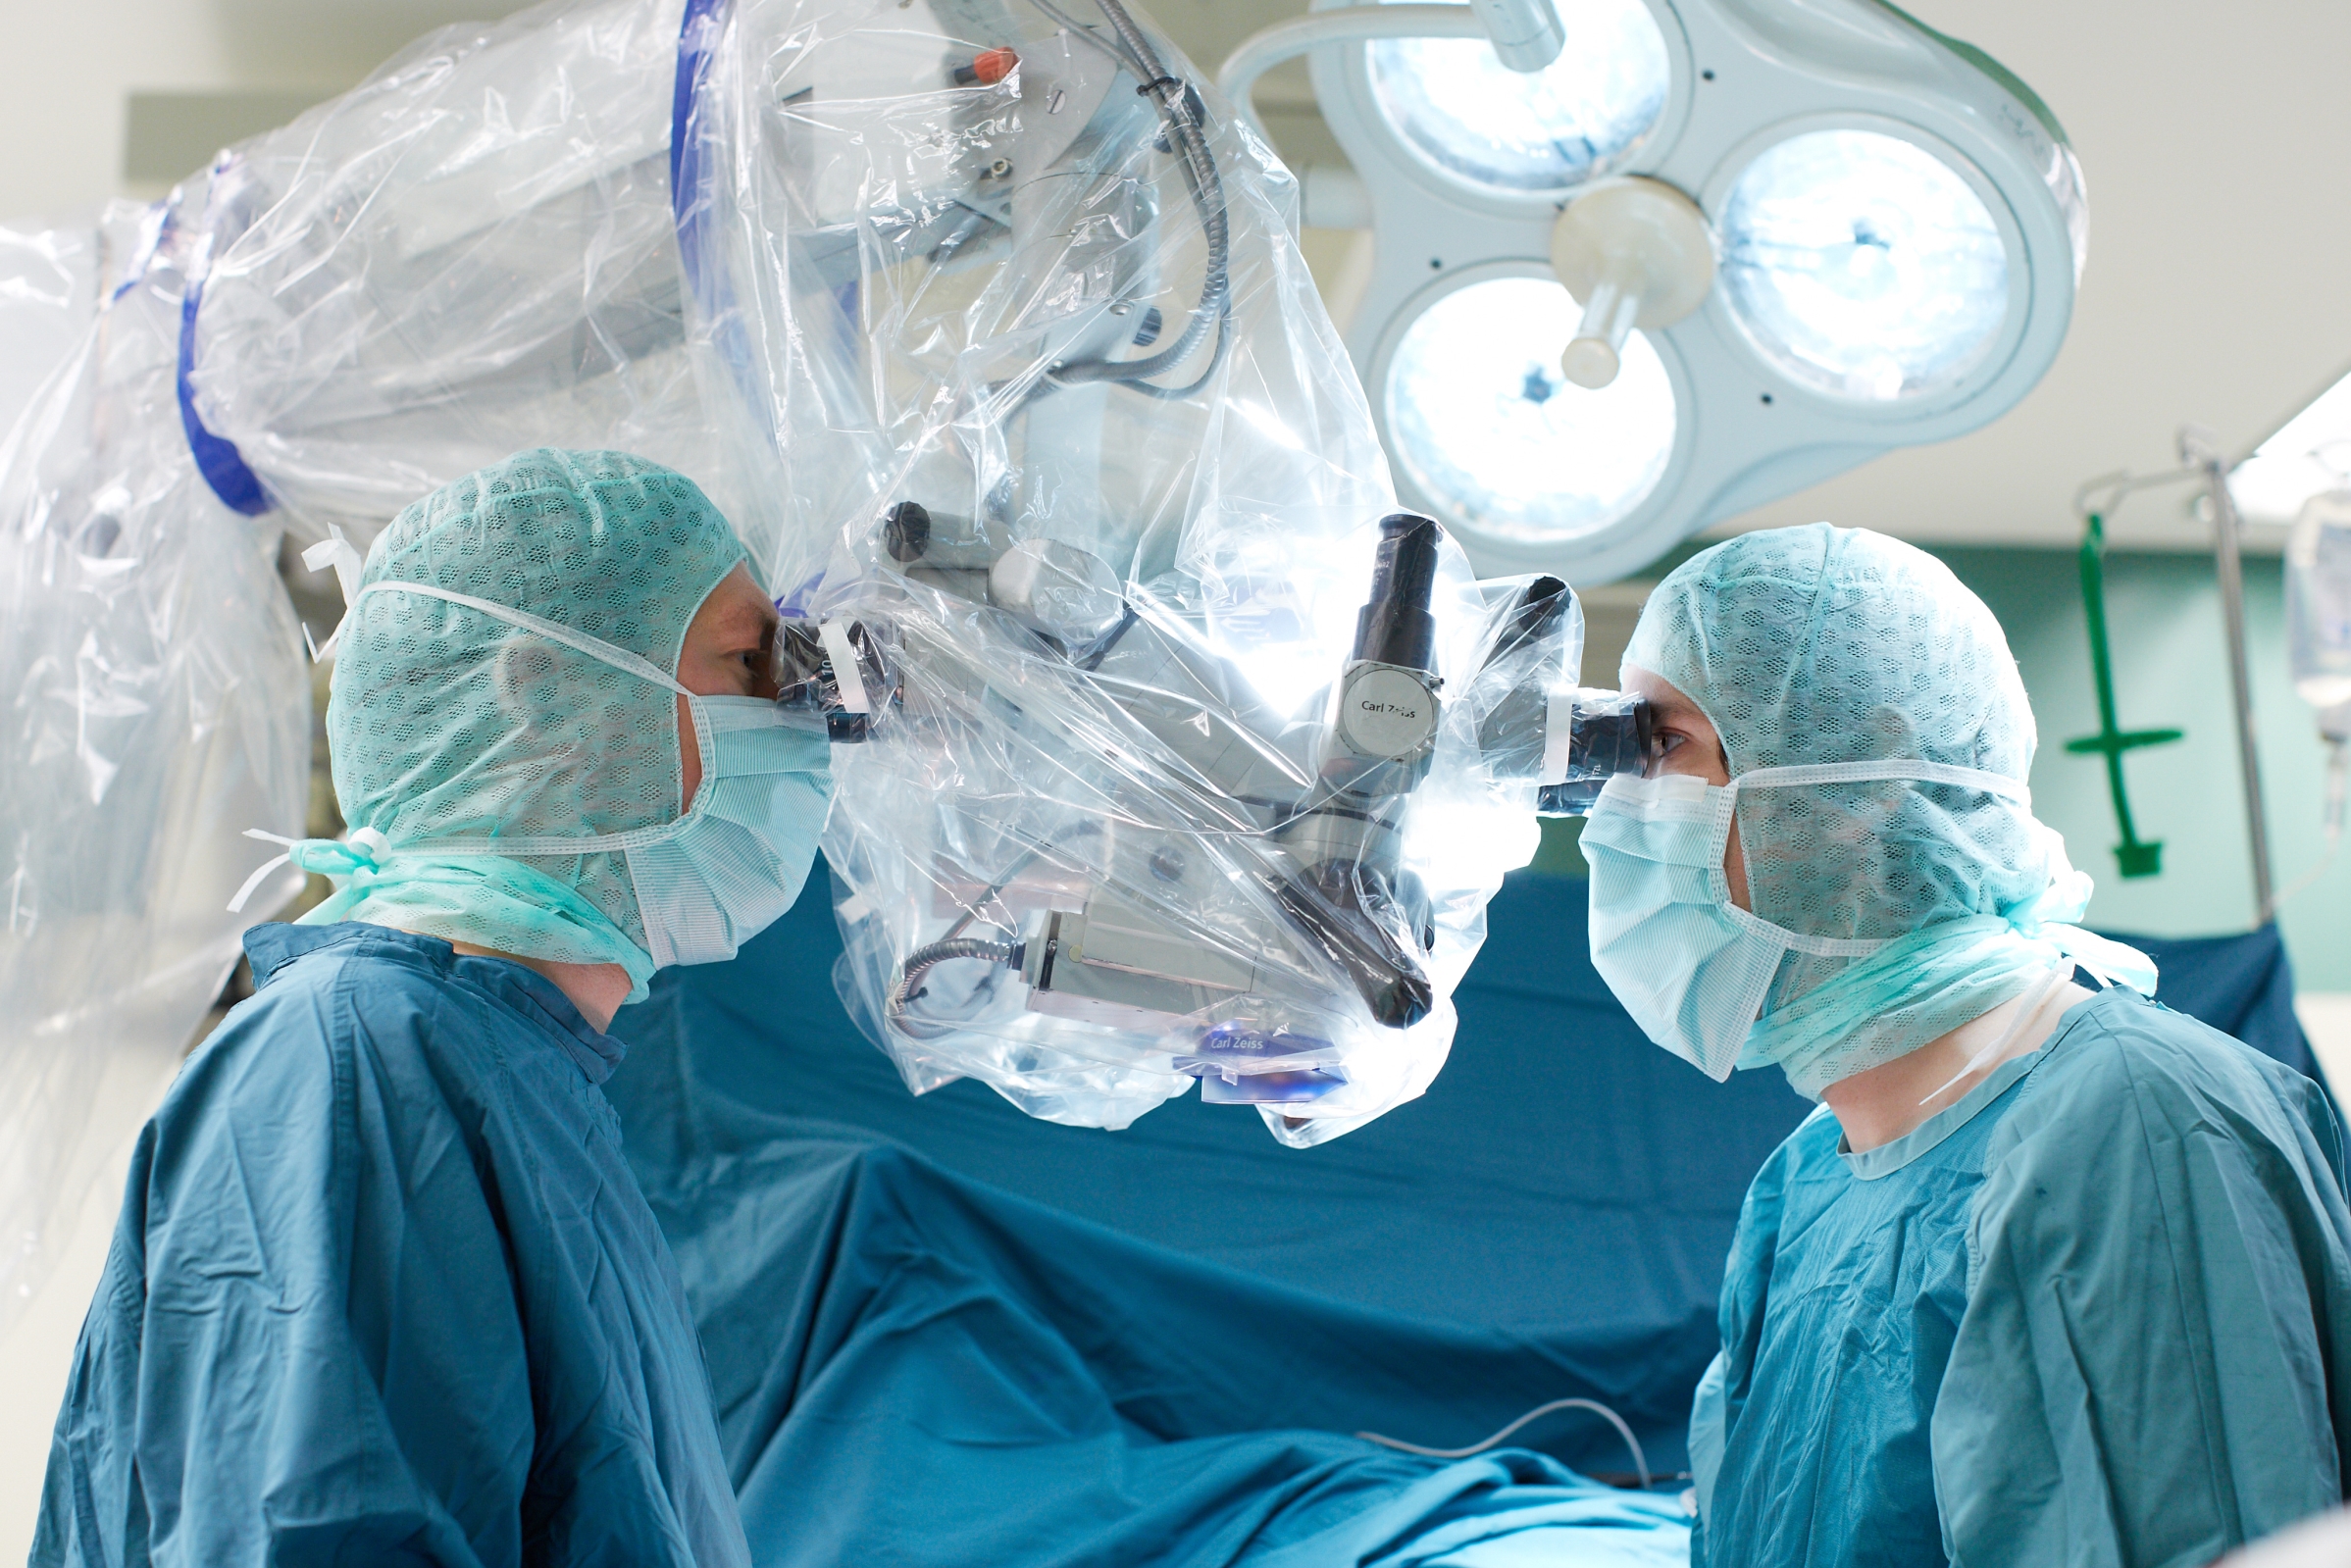 Plastische Chirurgen im OP-Saal bei einem Eingriff am Patienten